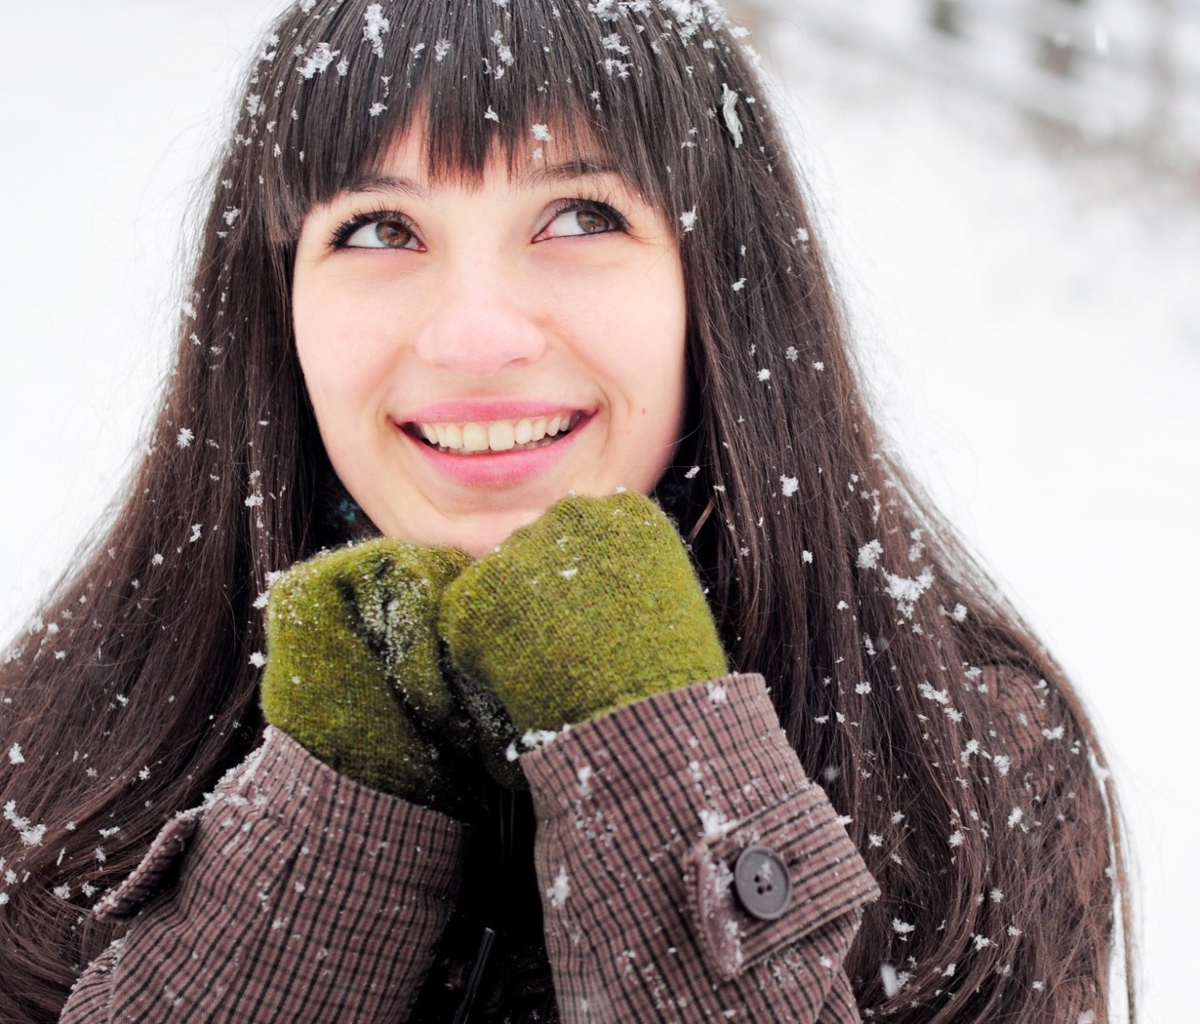 Das Brunette With Green Gloves In Snow Wallpaper 1200x1024